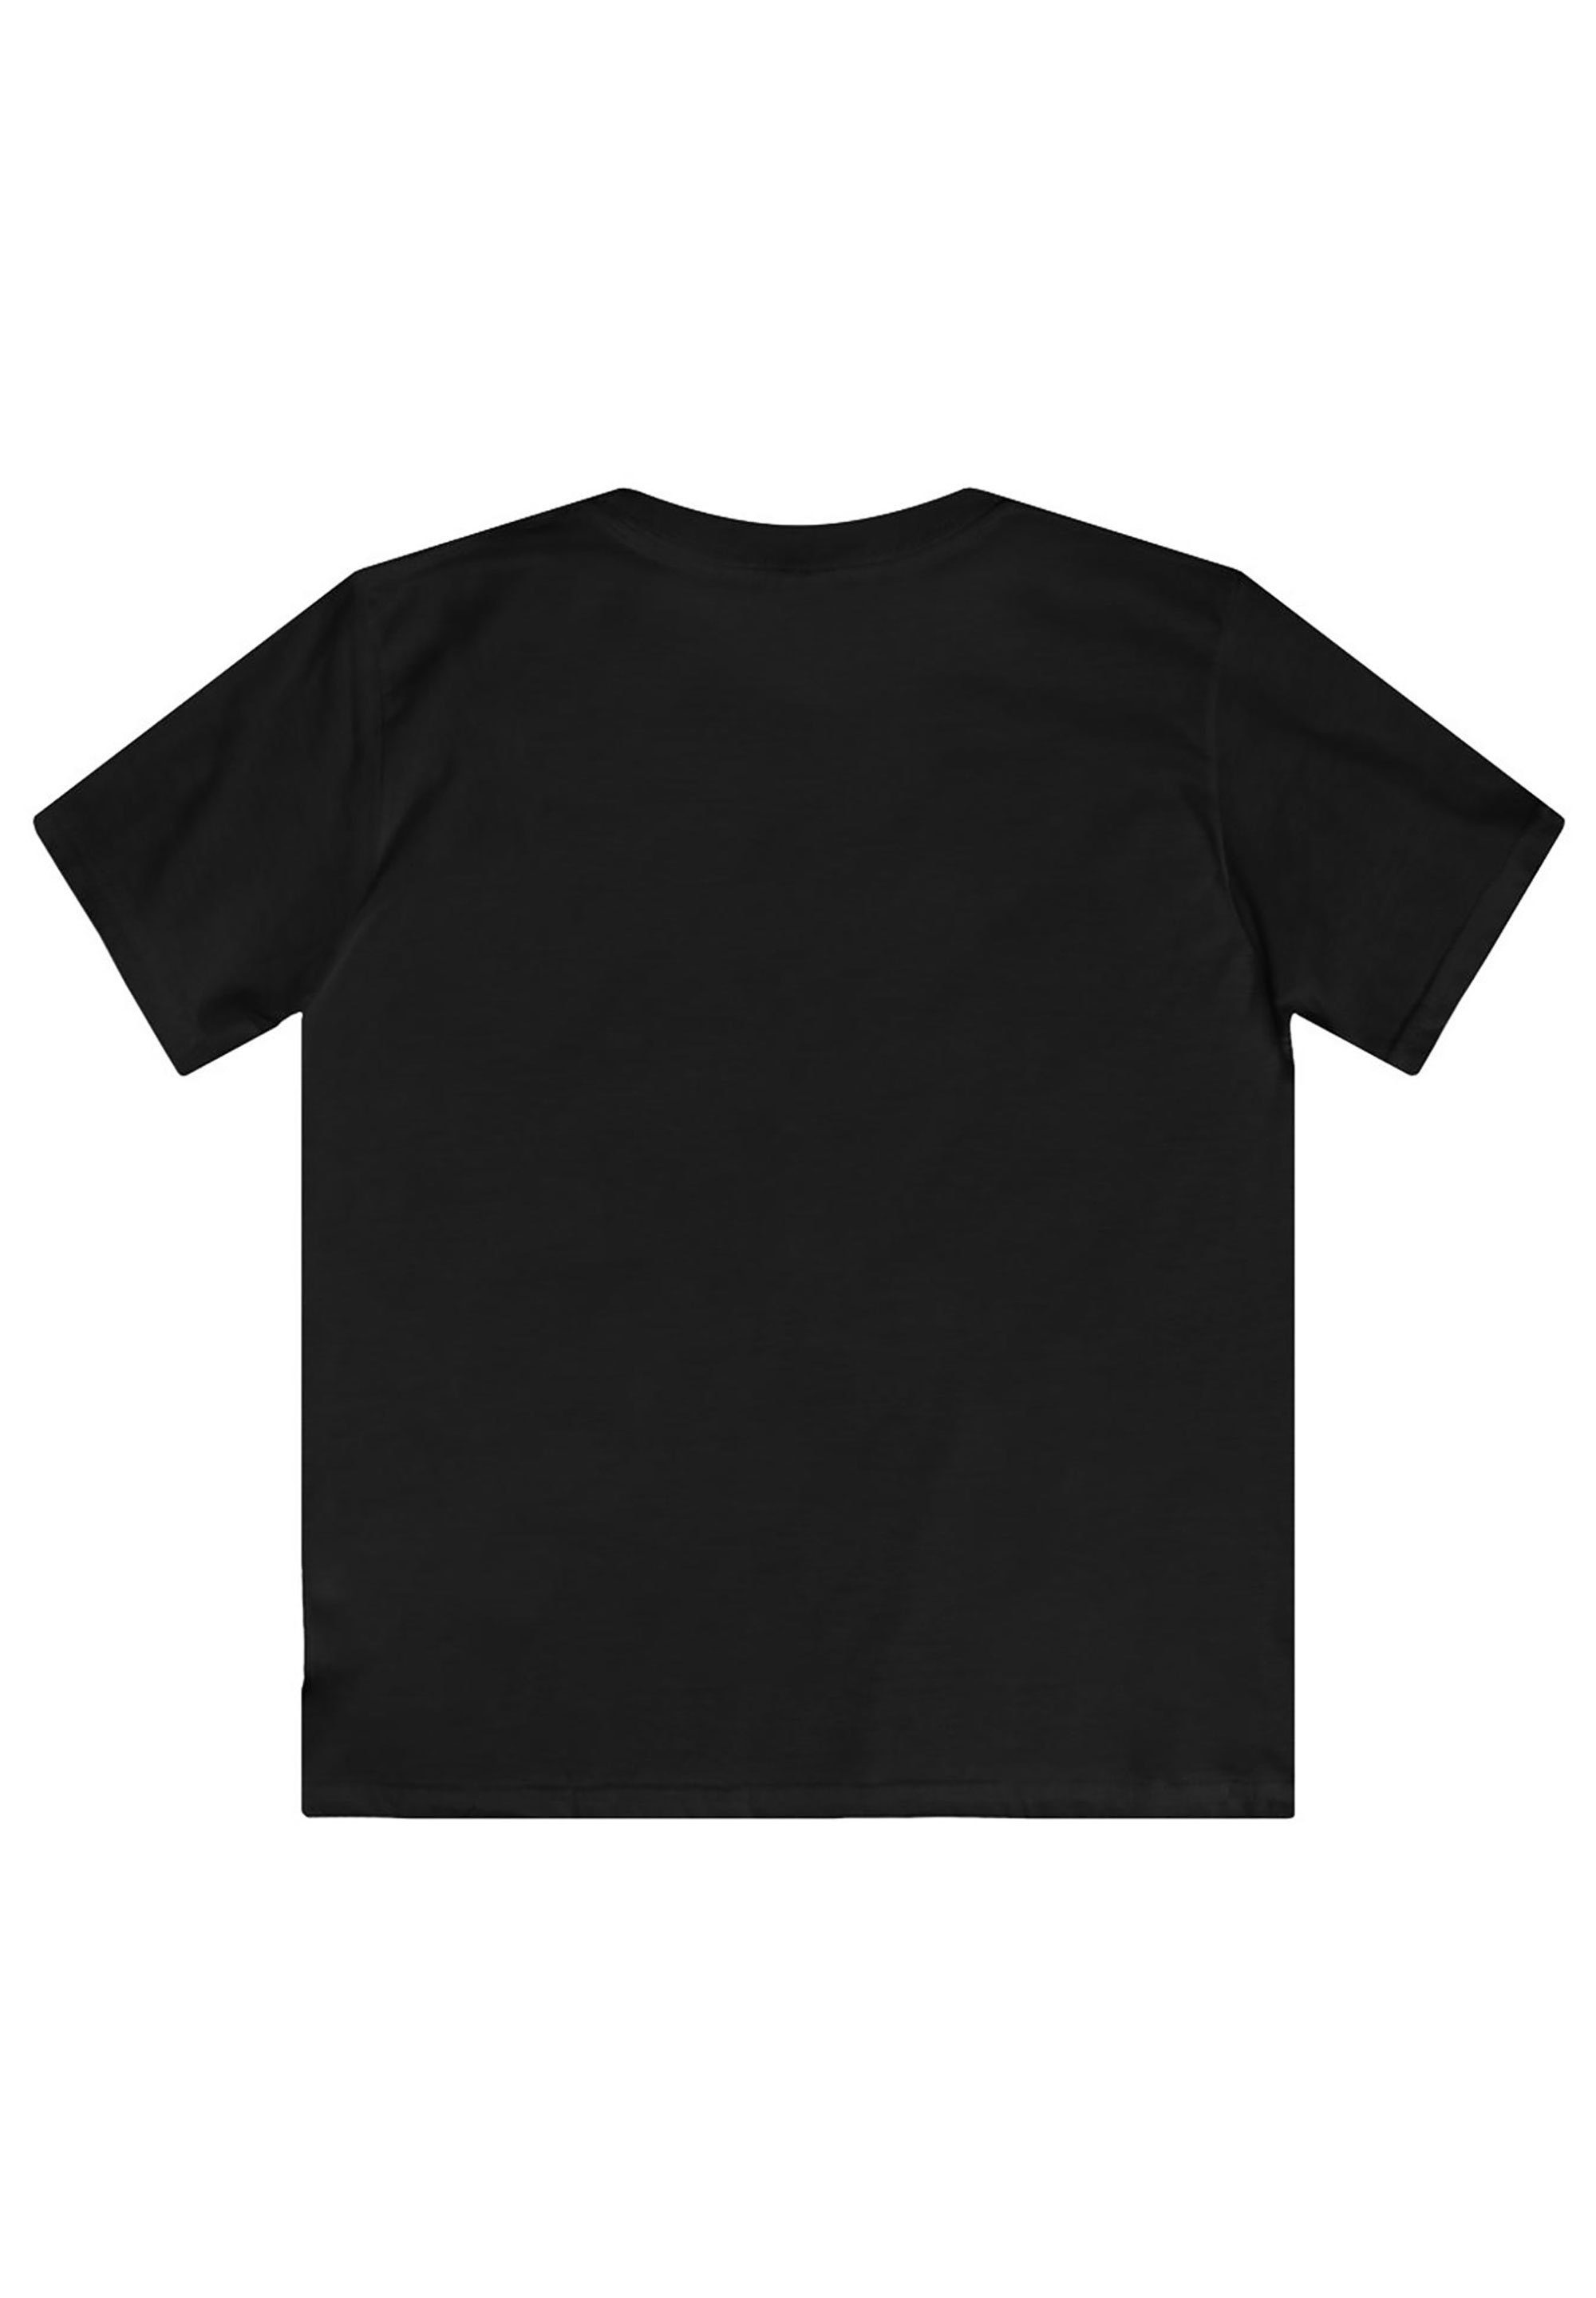 schwarz Stitch And Unisex Kinder,Premium Merch,Jungen,Mädchen,Bedruckt Lilo T-Shirt F4NT4STIC Disney